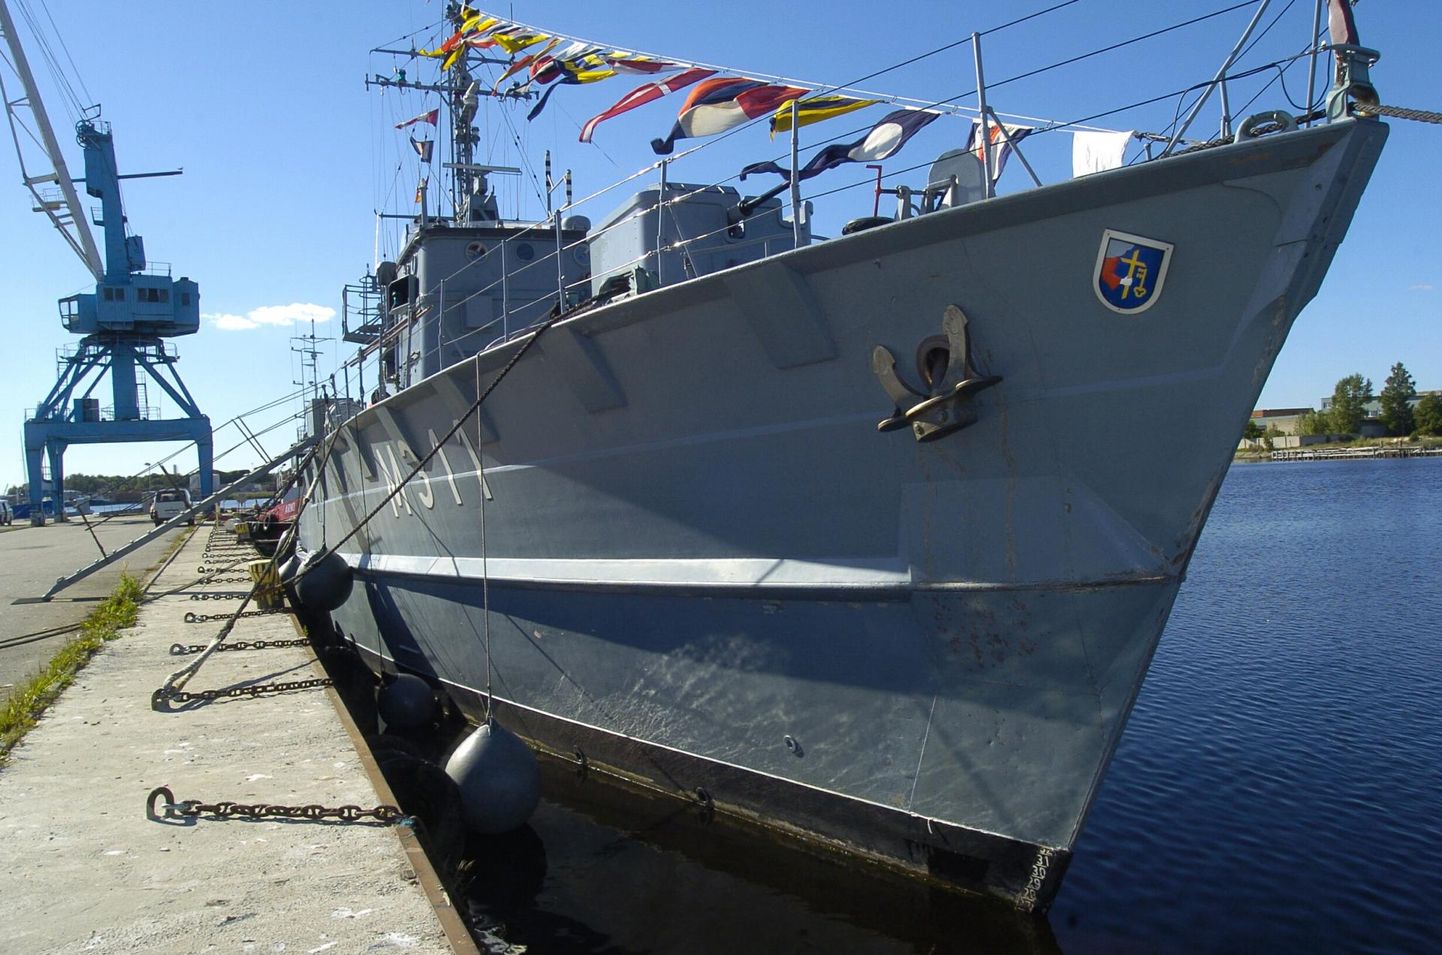 1. september 2005. Eesti mereväe miinijahtija Wambola, mis kannab Pärnu vappi, on jõudnud Pärnusse.